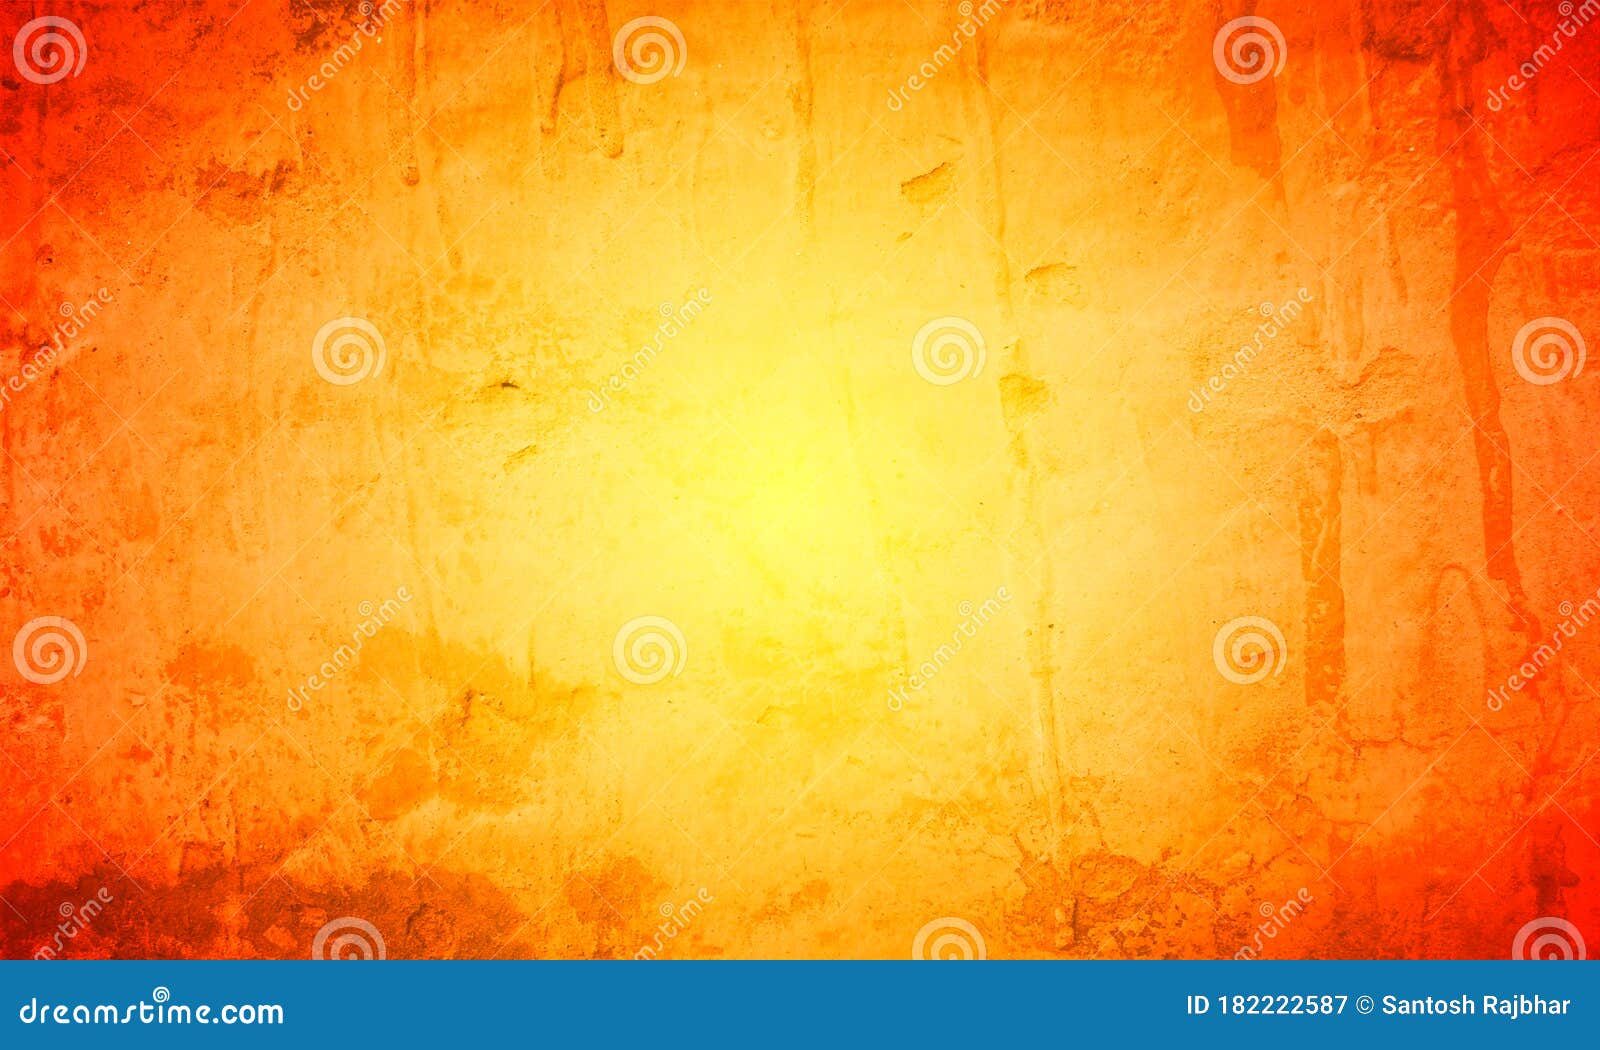 Bộ sưu tập Vector Hình nền trừu tượng màu cam và màu vàng thật sự độc đáo và tuyệt đẹp. Bạn sẽ thấy sự kết hợp hoàn hảo giữa hai màu sắc tươi sáng này vào bức tranh của mình. Hãy cùng khám phá những hình ảnh đầy sáng tạo này nhé!